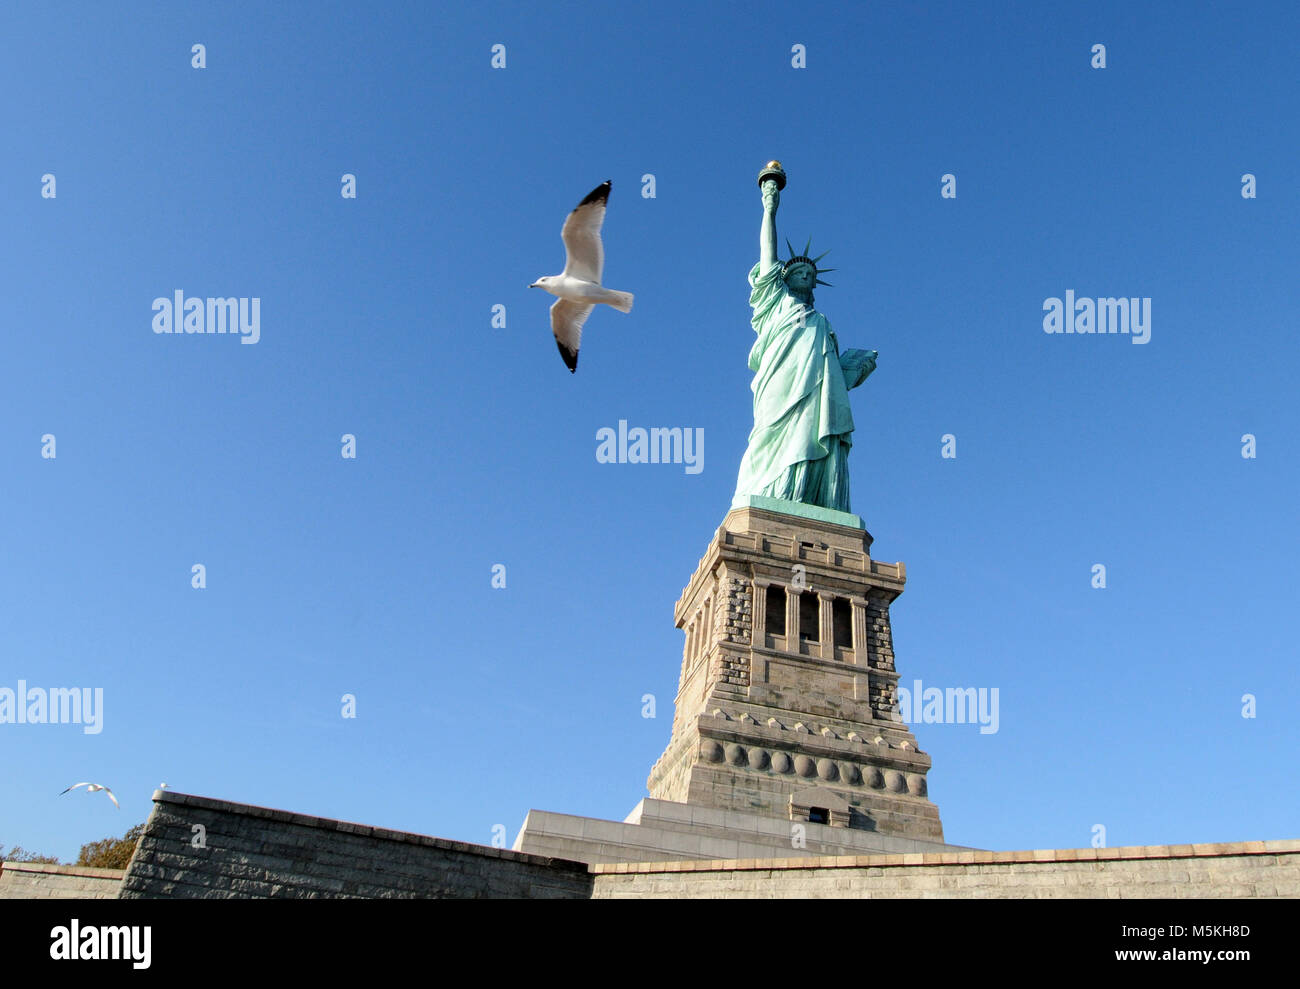 Statue of Liberty, New York City, NY, USA. Stock Photo